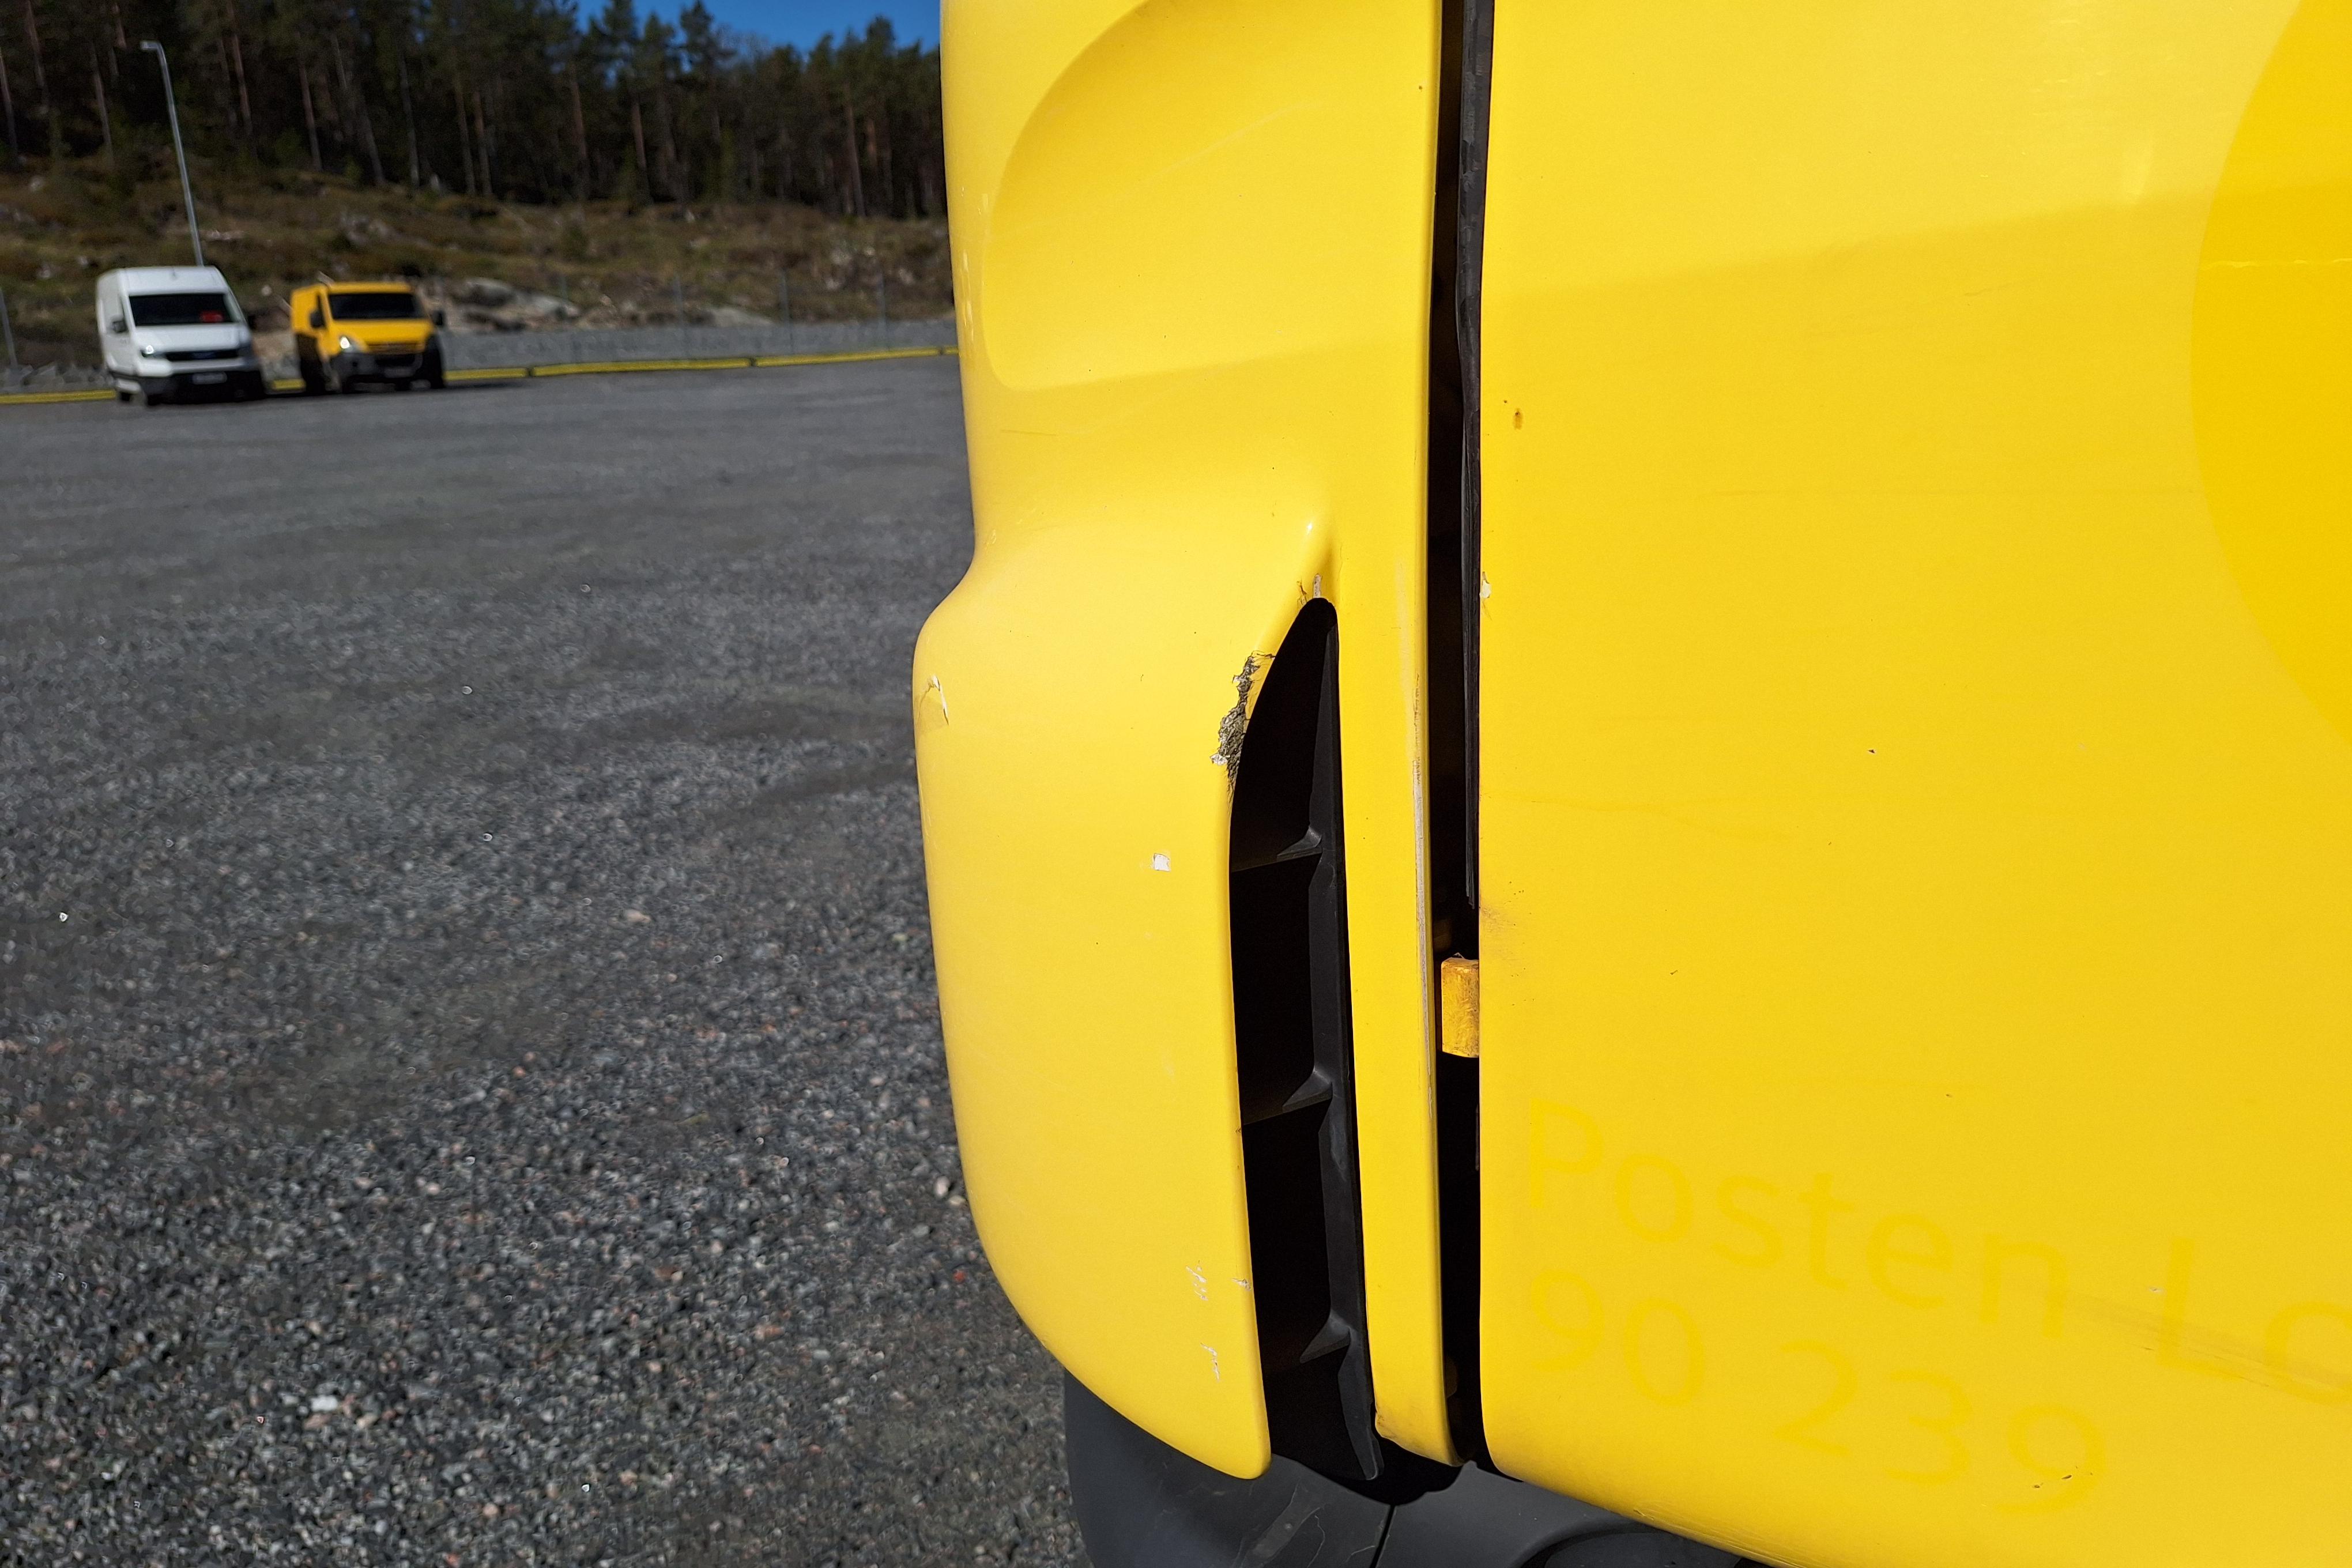 Scania P230 - 406 071 km - Automatyczna - żółty - 2013